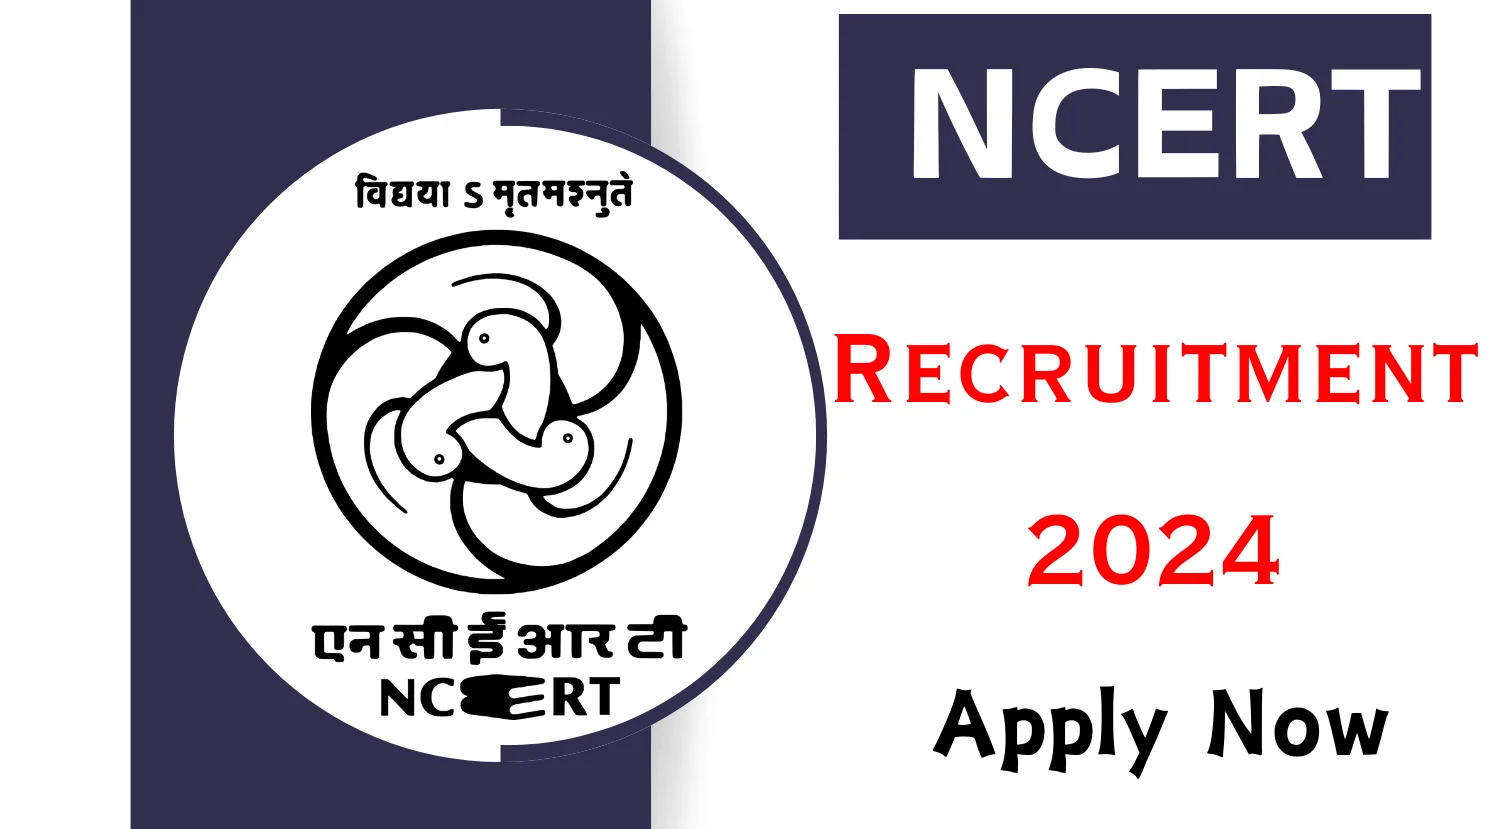 NCERT Consultant Recruitment 2024